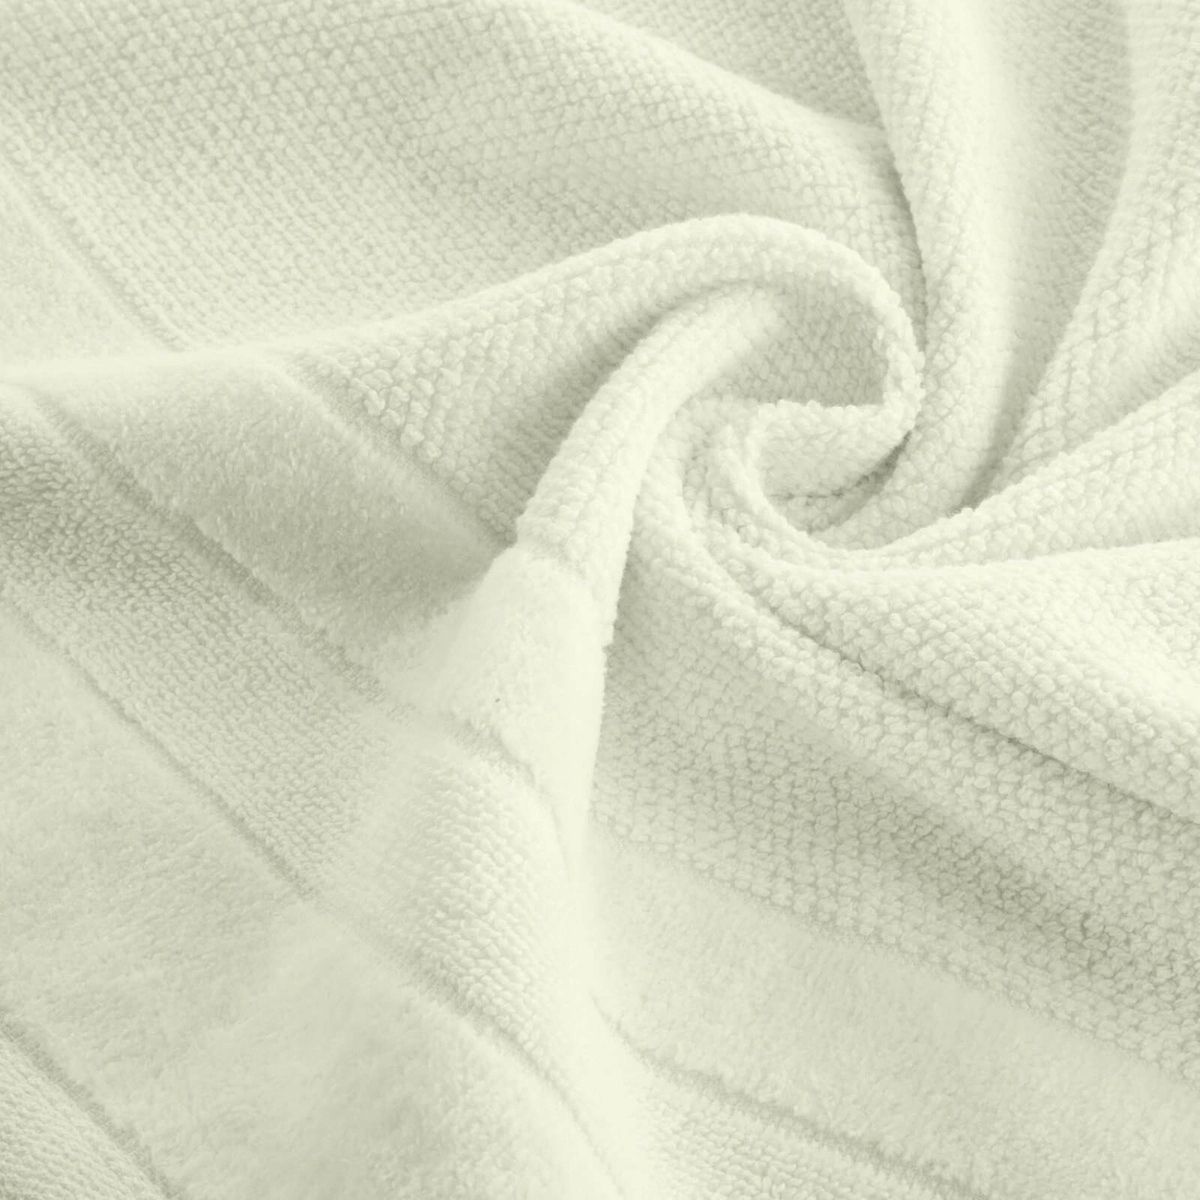 Ręcznik Kąpielowy Bawełniany Frotte 500g/m2 Linea 70x140